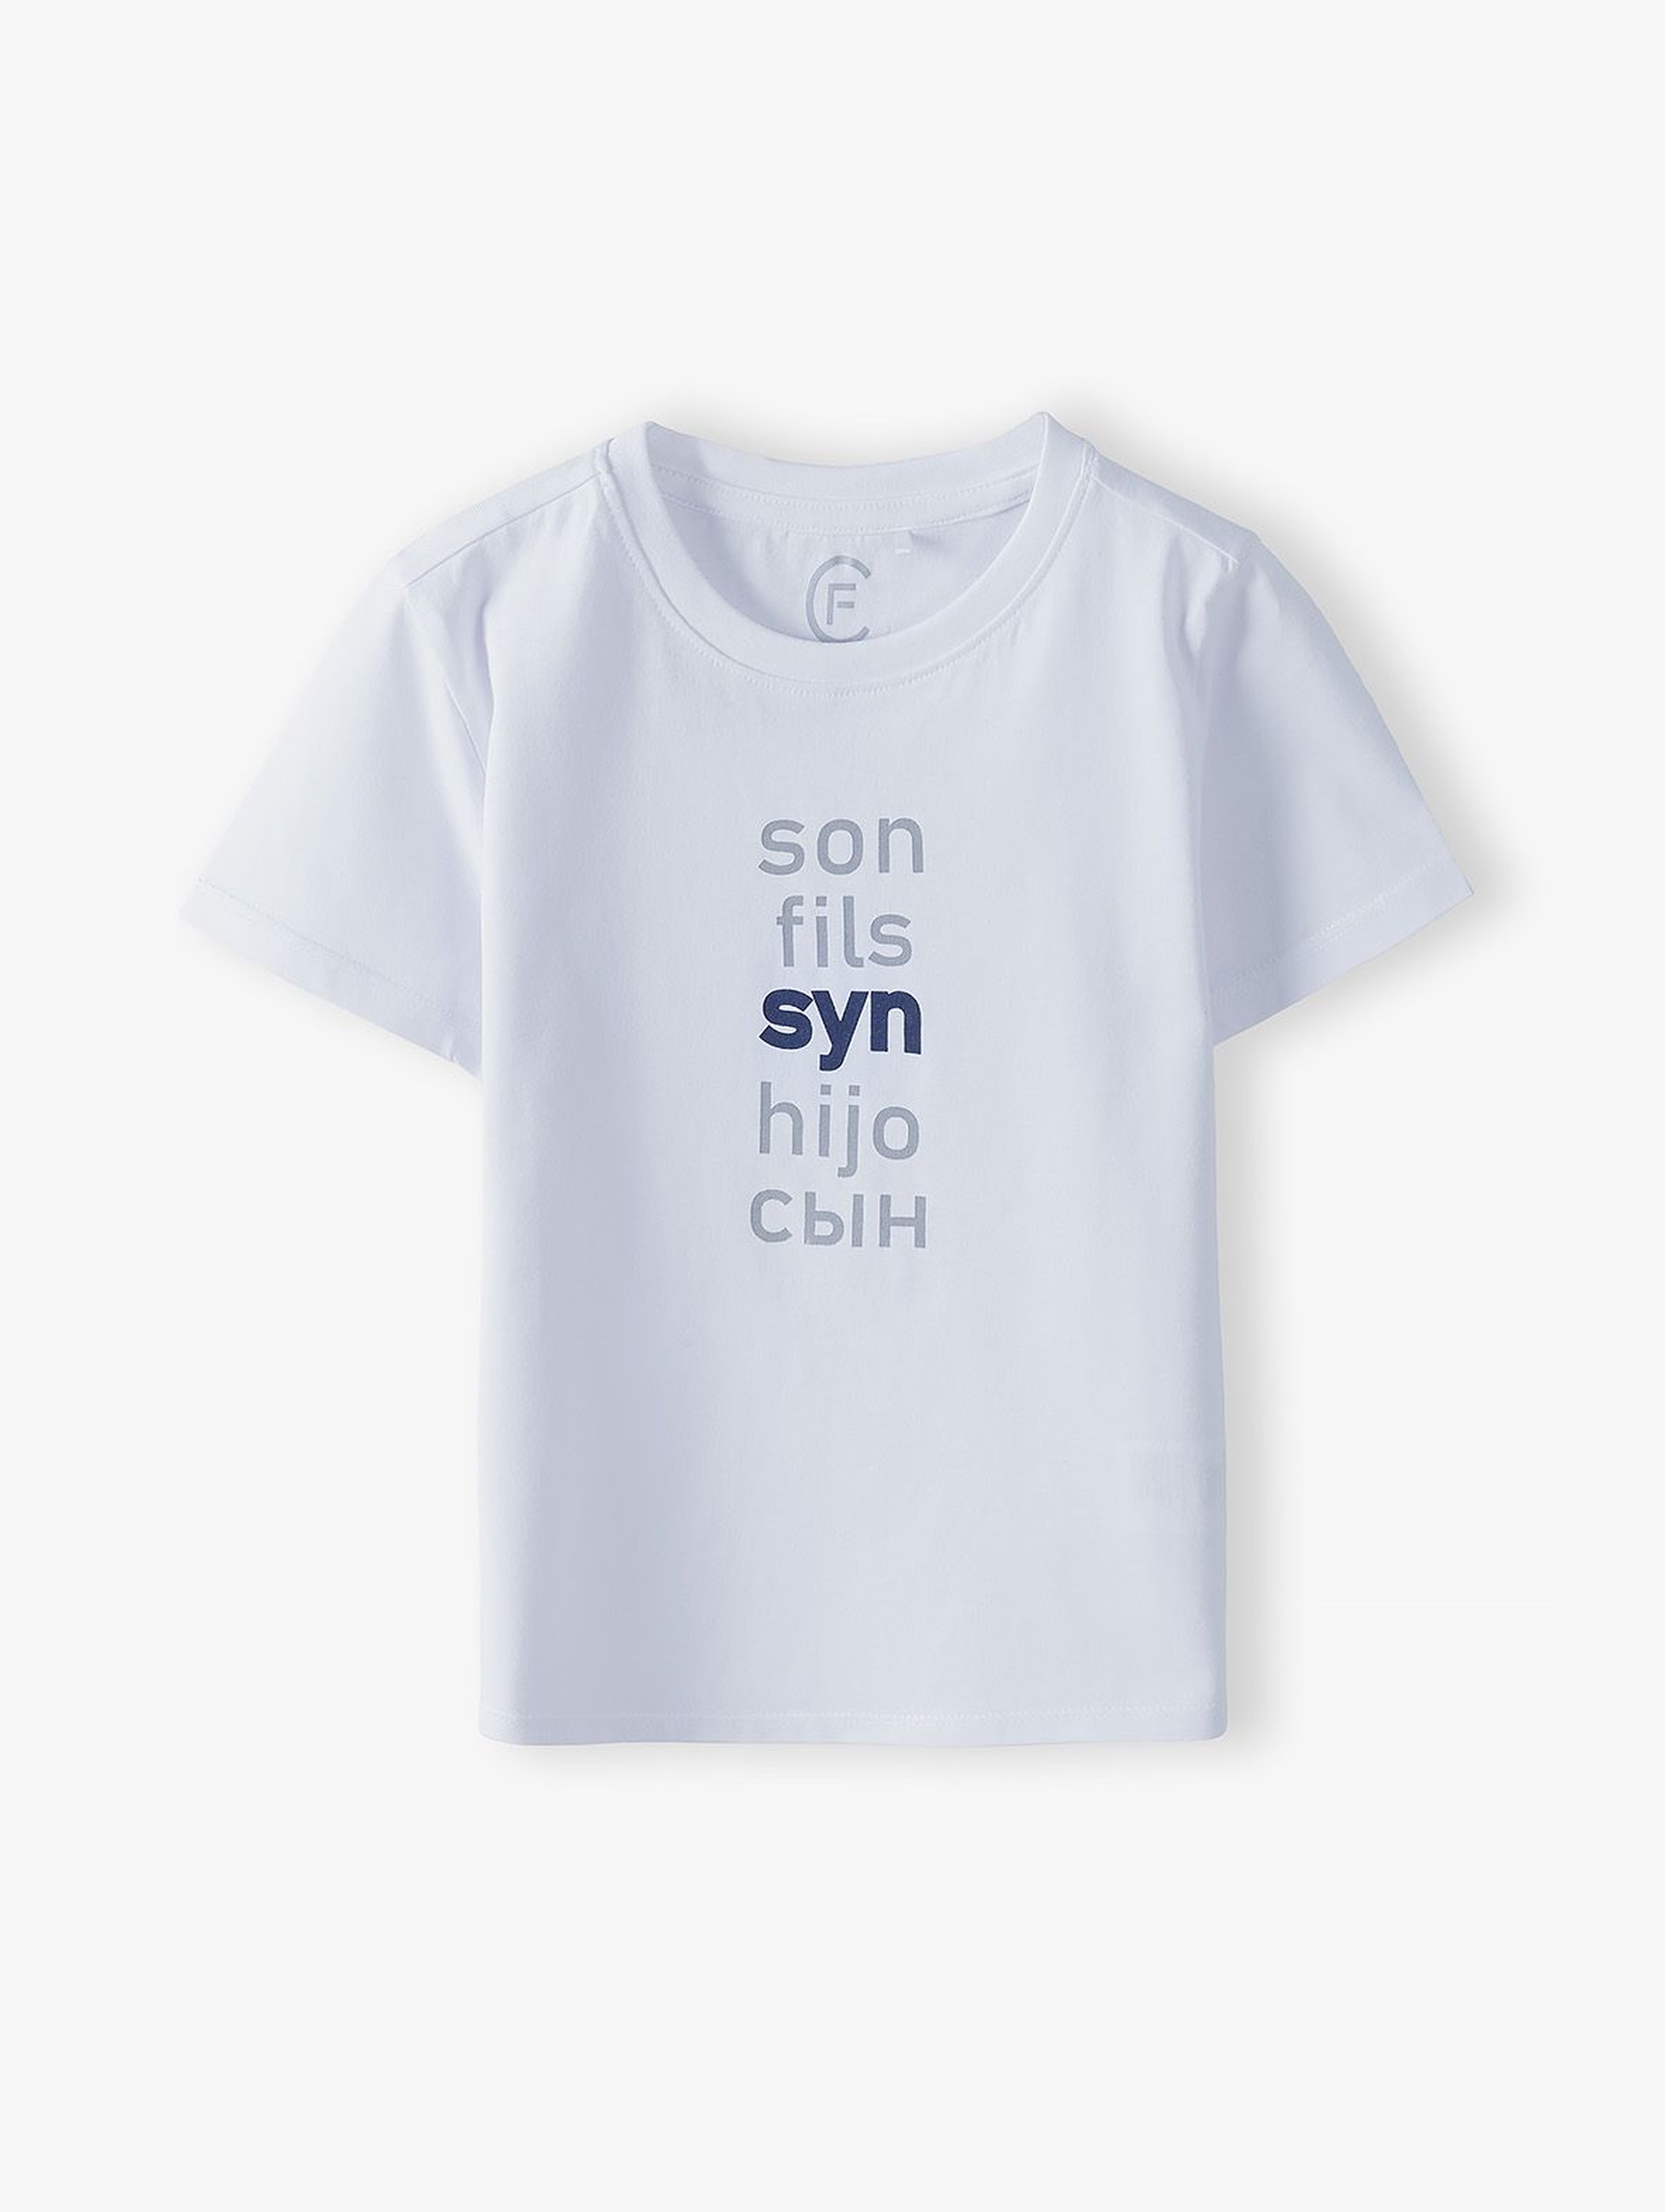 Bawełniany t-shirt chłopięcy biały - Syn- ubrania dla całej rodziny